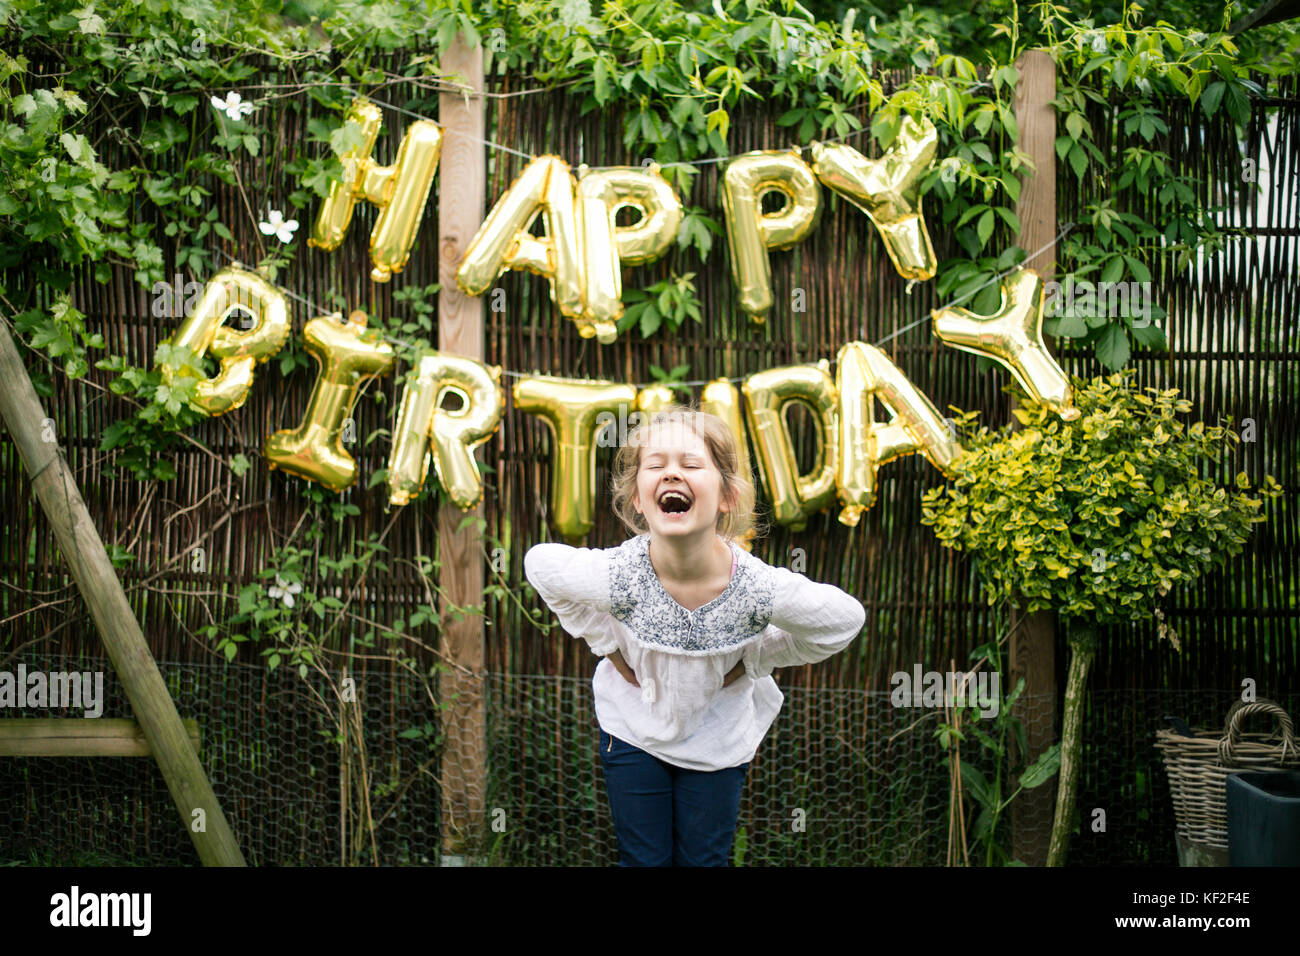 Portrait des lachenden Mädchens im Garten mit Dekoration für die Geburtstagsparty im Hintergrund Stockfoto